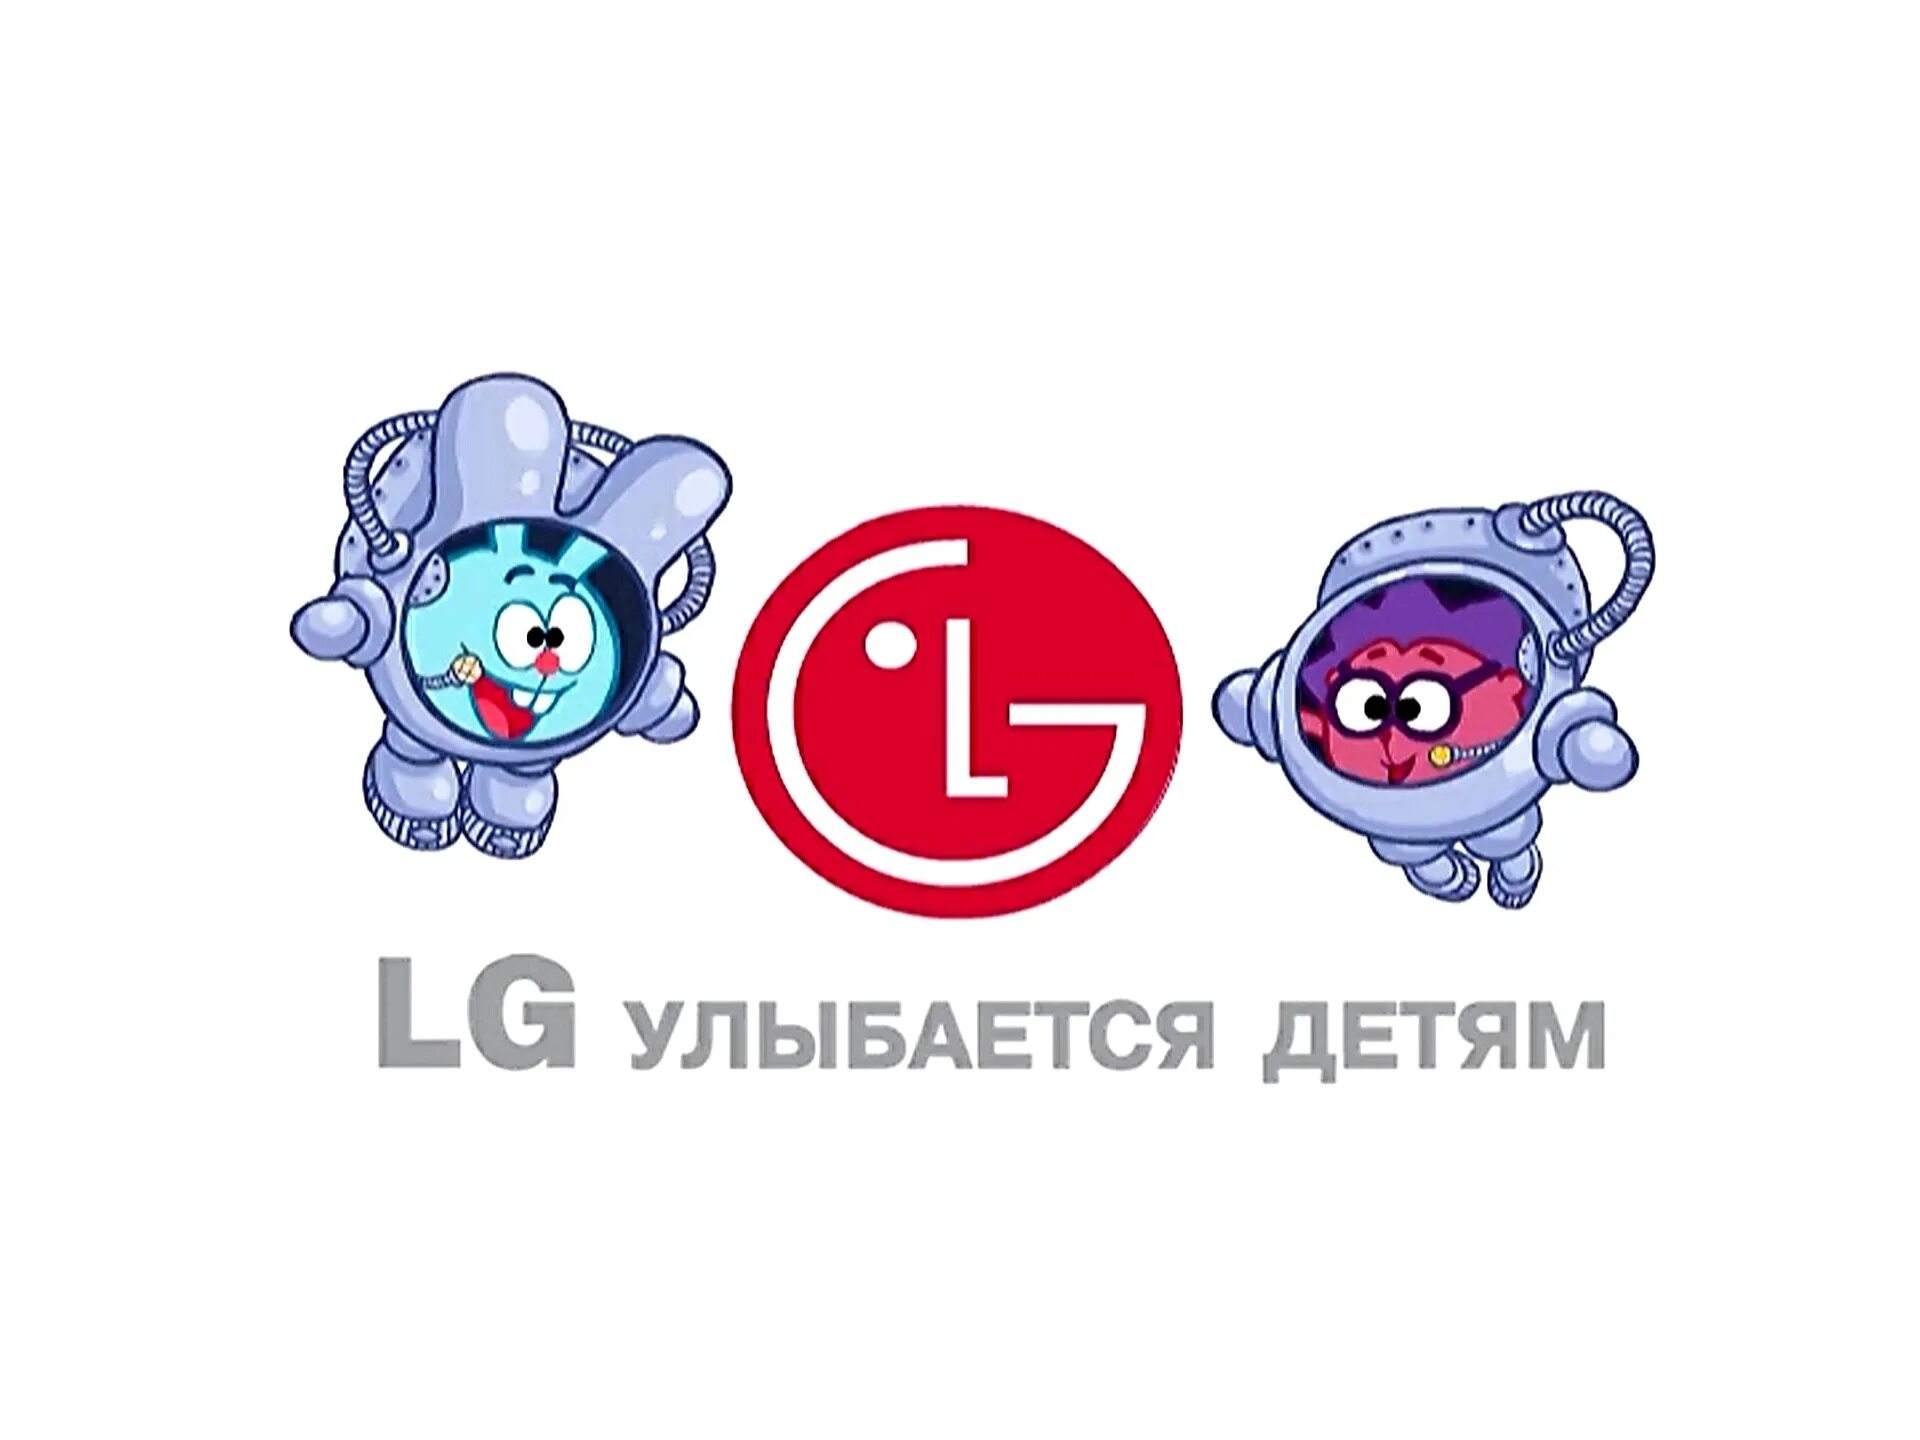 Смешарики LG. Смешарики реклама. Смешарики LG улыбается детям. Смешарики реклама LG. Запусти мир смешариков